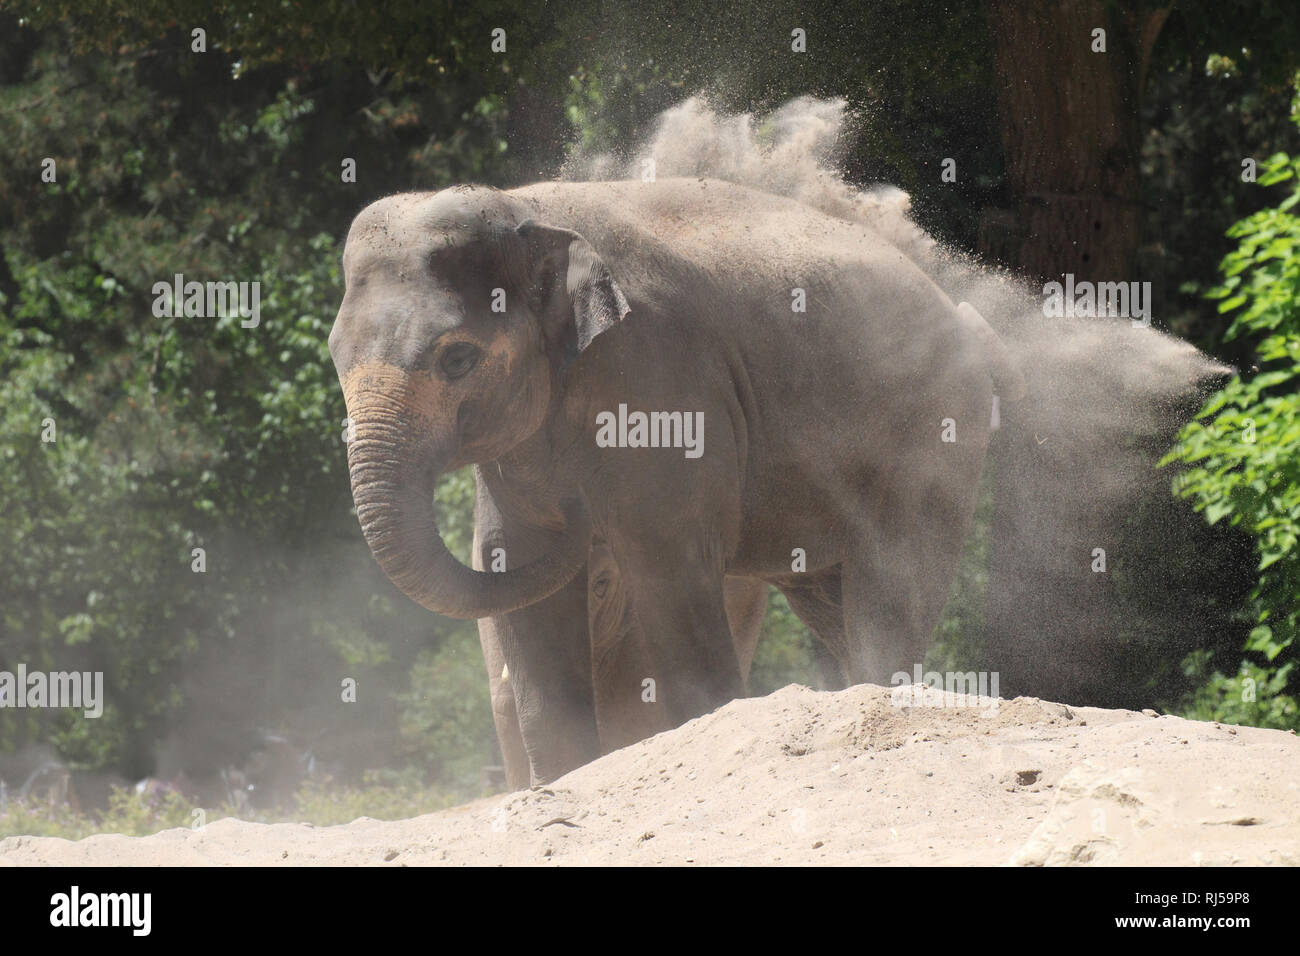 Asiatischer Elefant nimmt ein Staubbad, Elephas maximus Foto Stock